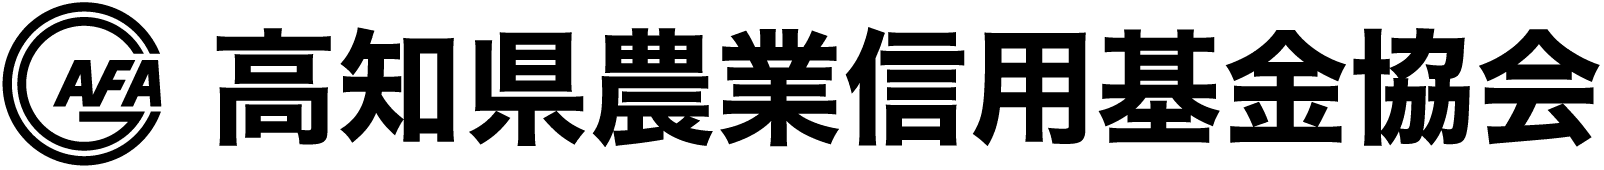 高知県農業信用基金協会